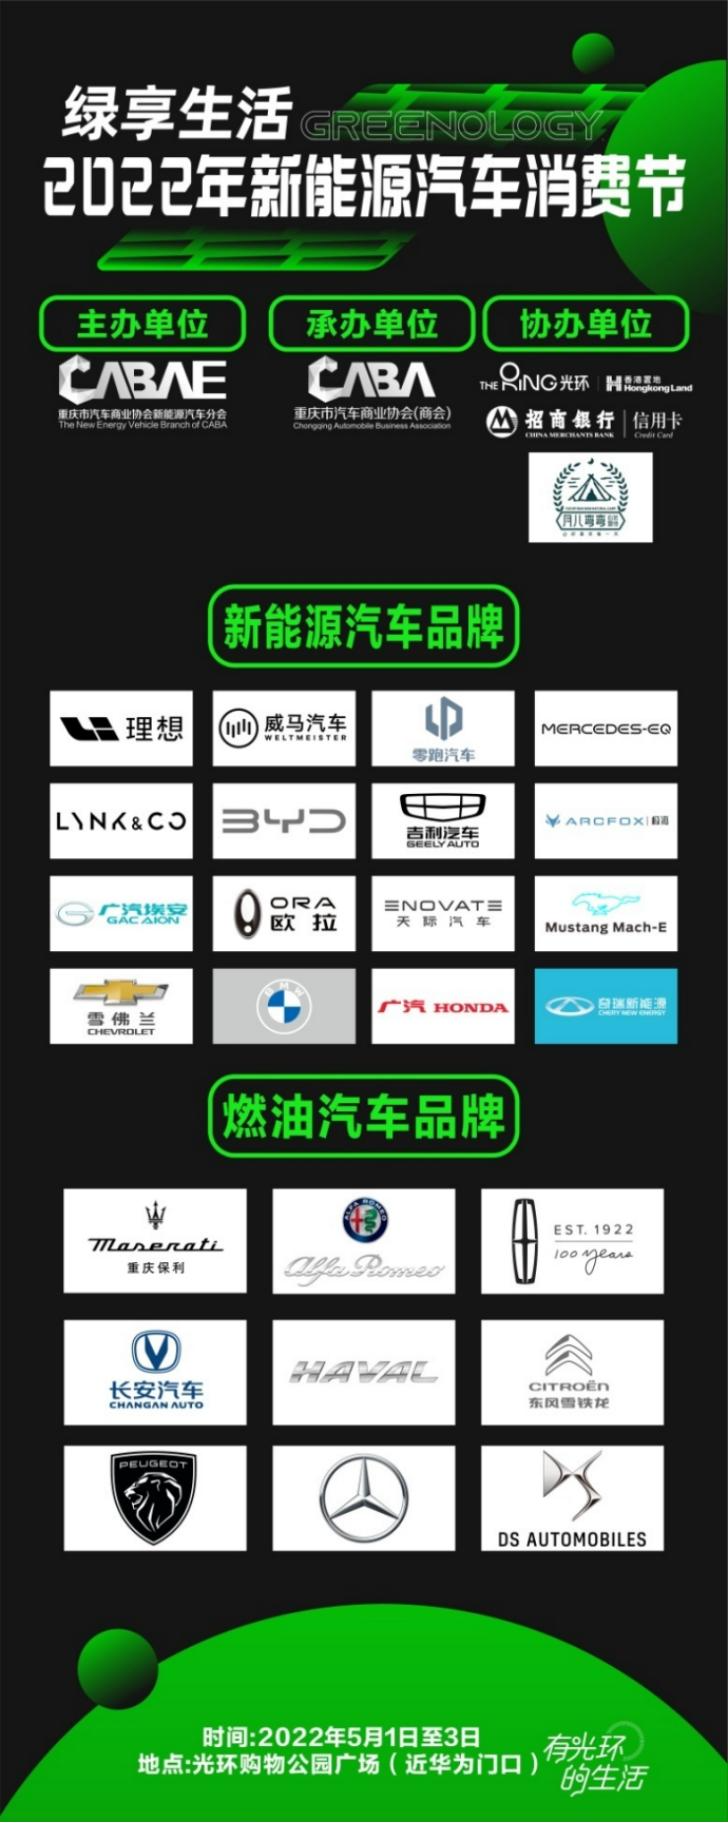 重庆新能源汽车展